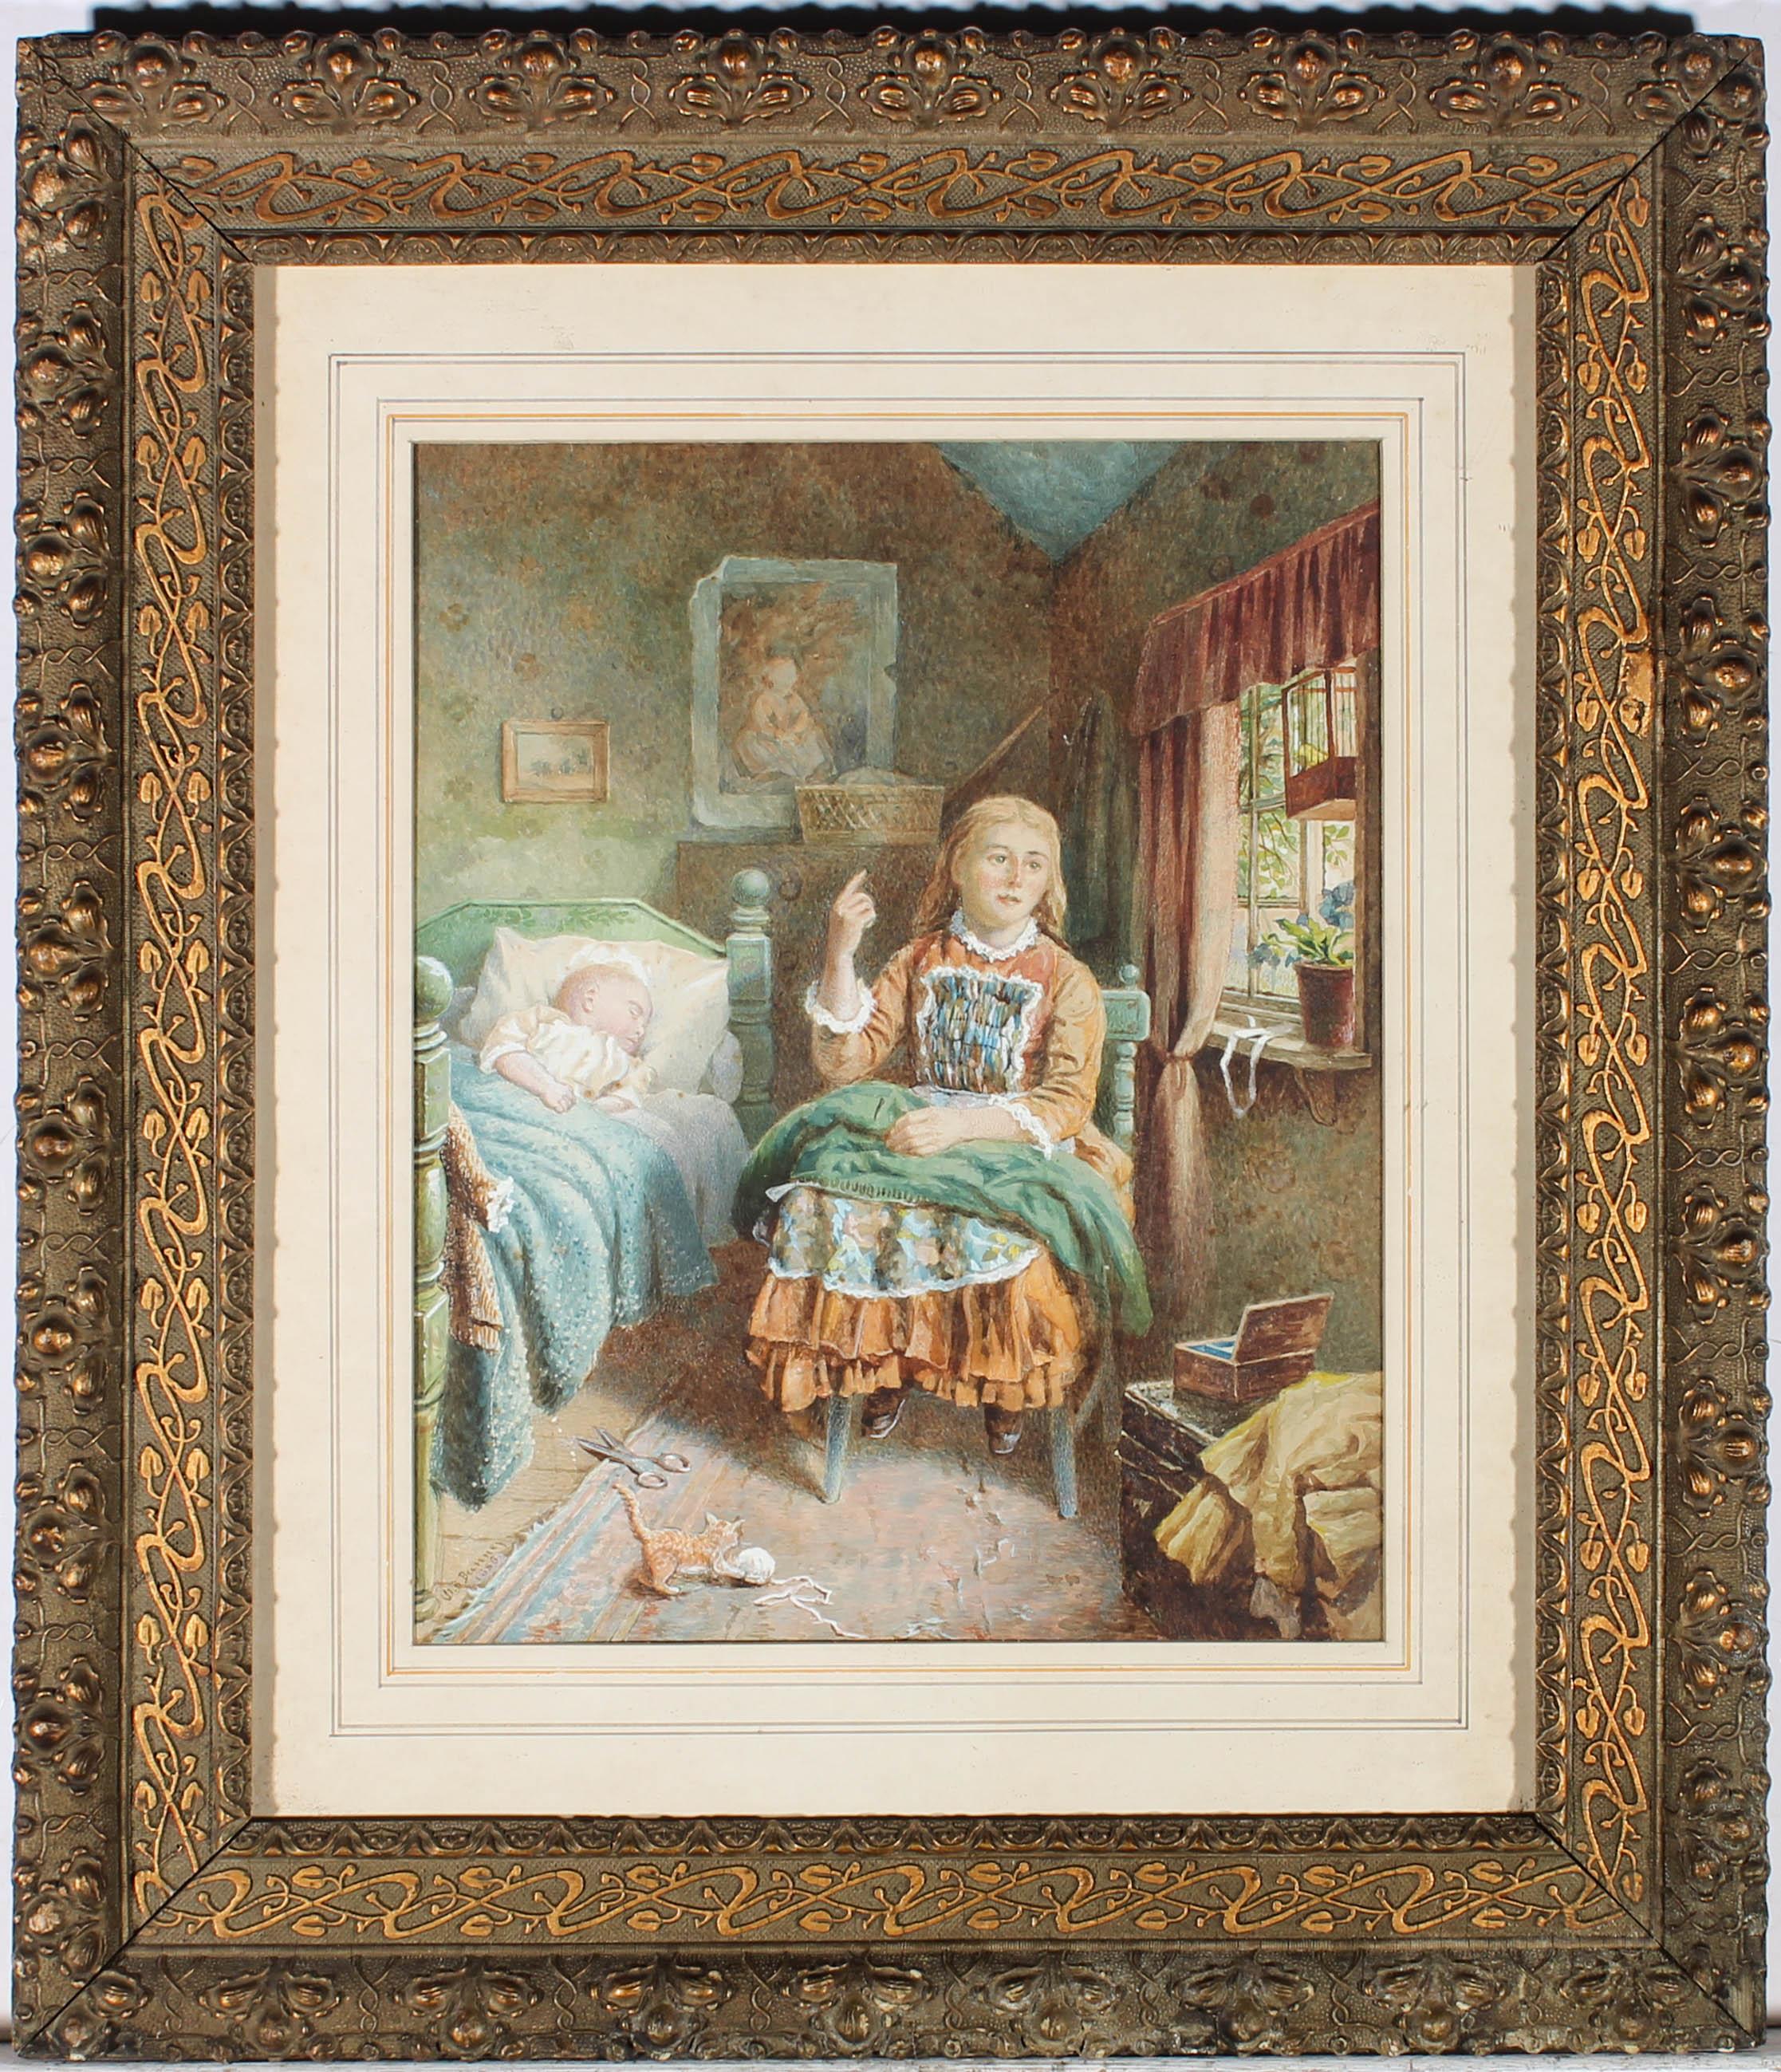 Eine charmante viktorianische Aquarell-Interieur-Szene, die ein junges Mädchen zeigt, das auf einem Holzstuhl sitzt und eine grüne Decke auf dem Schoß hat, während ein Baby in einem Bett neben ihr schläft. Die Sonne scheint durch ein offenes Fenster